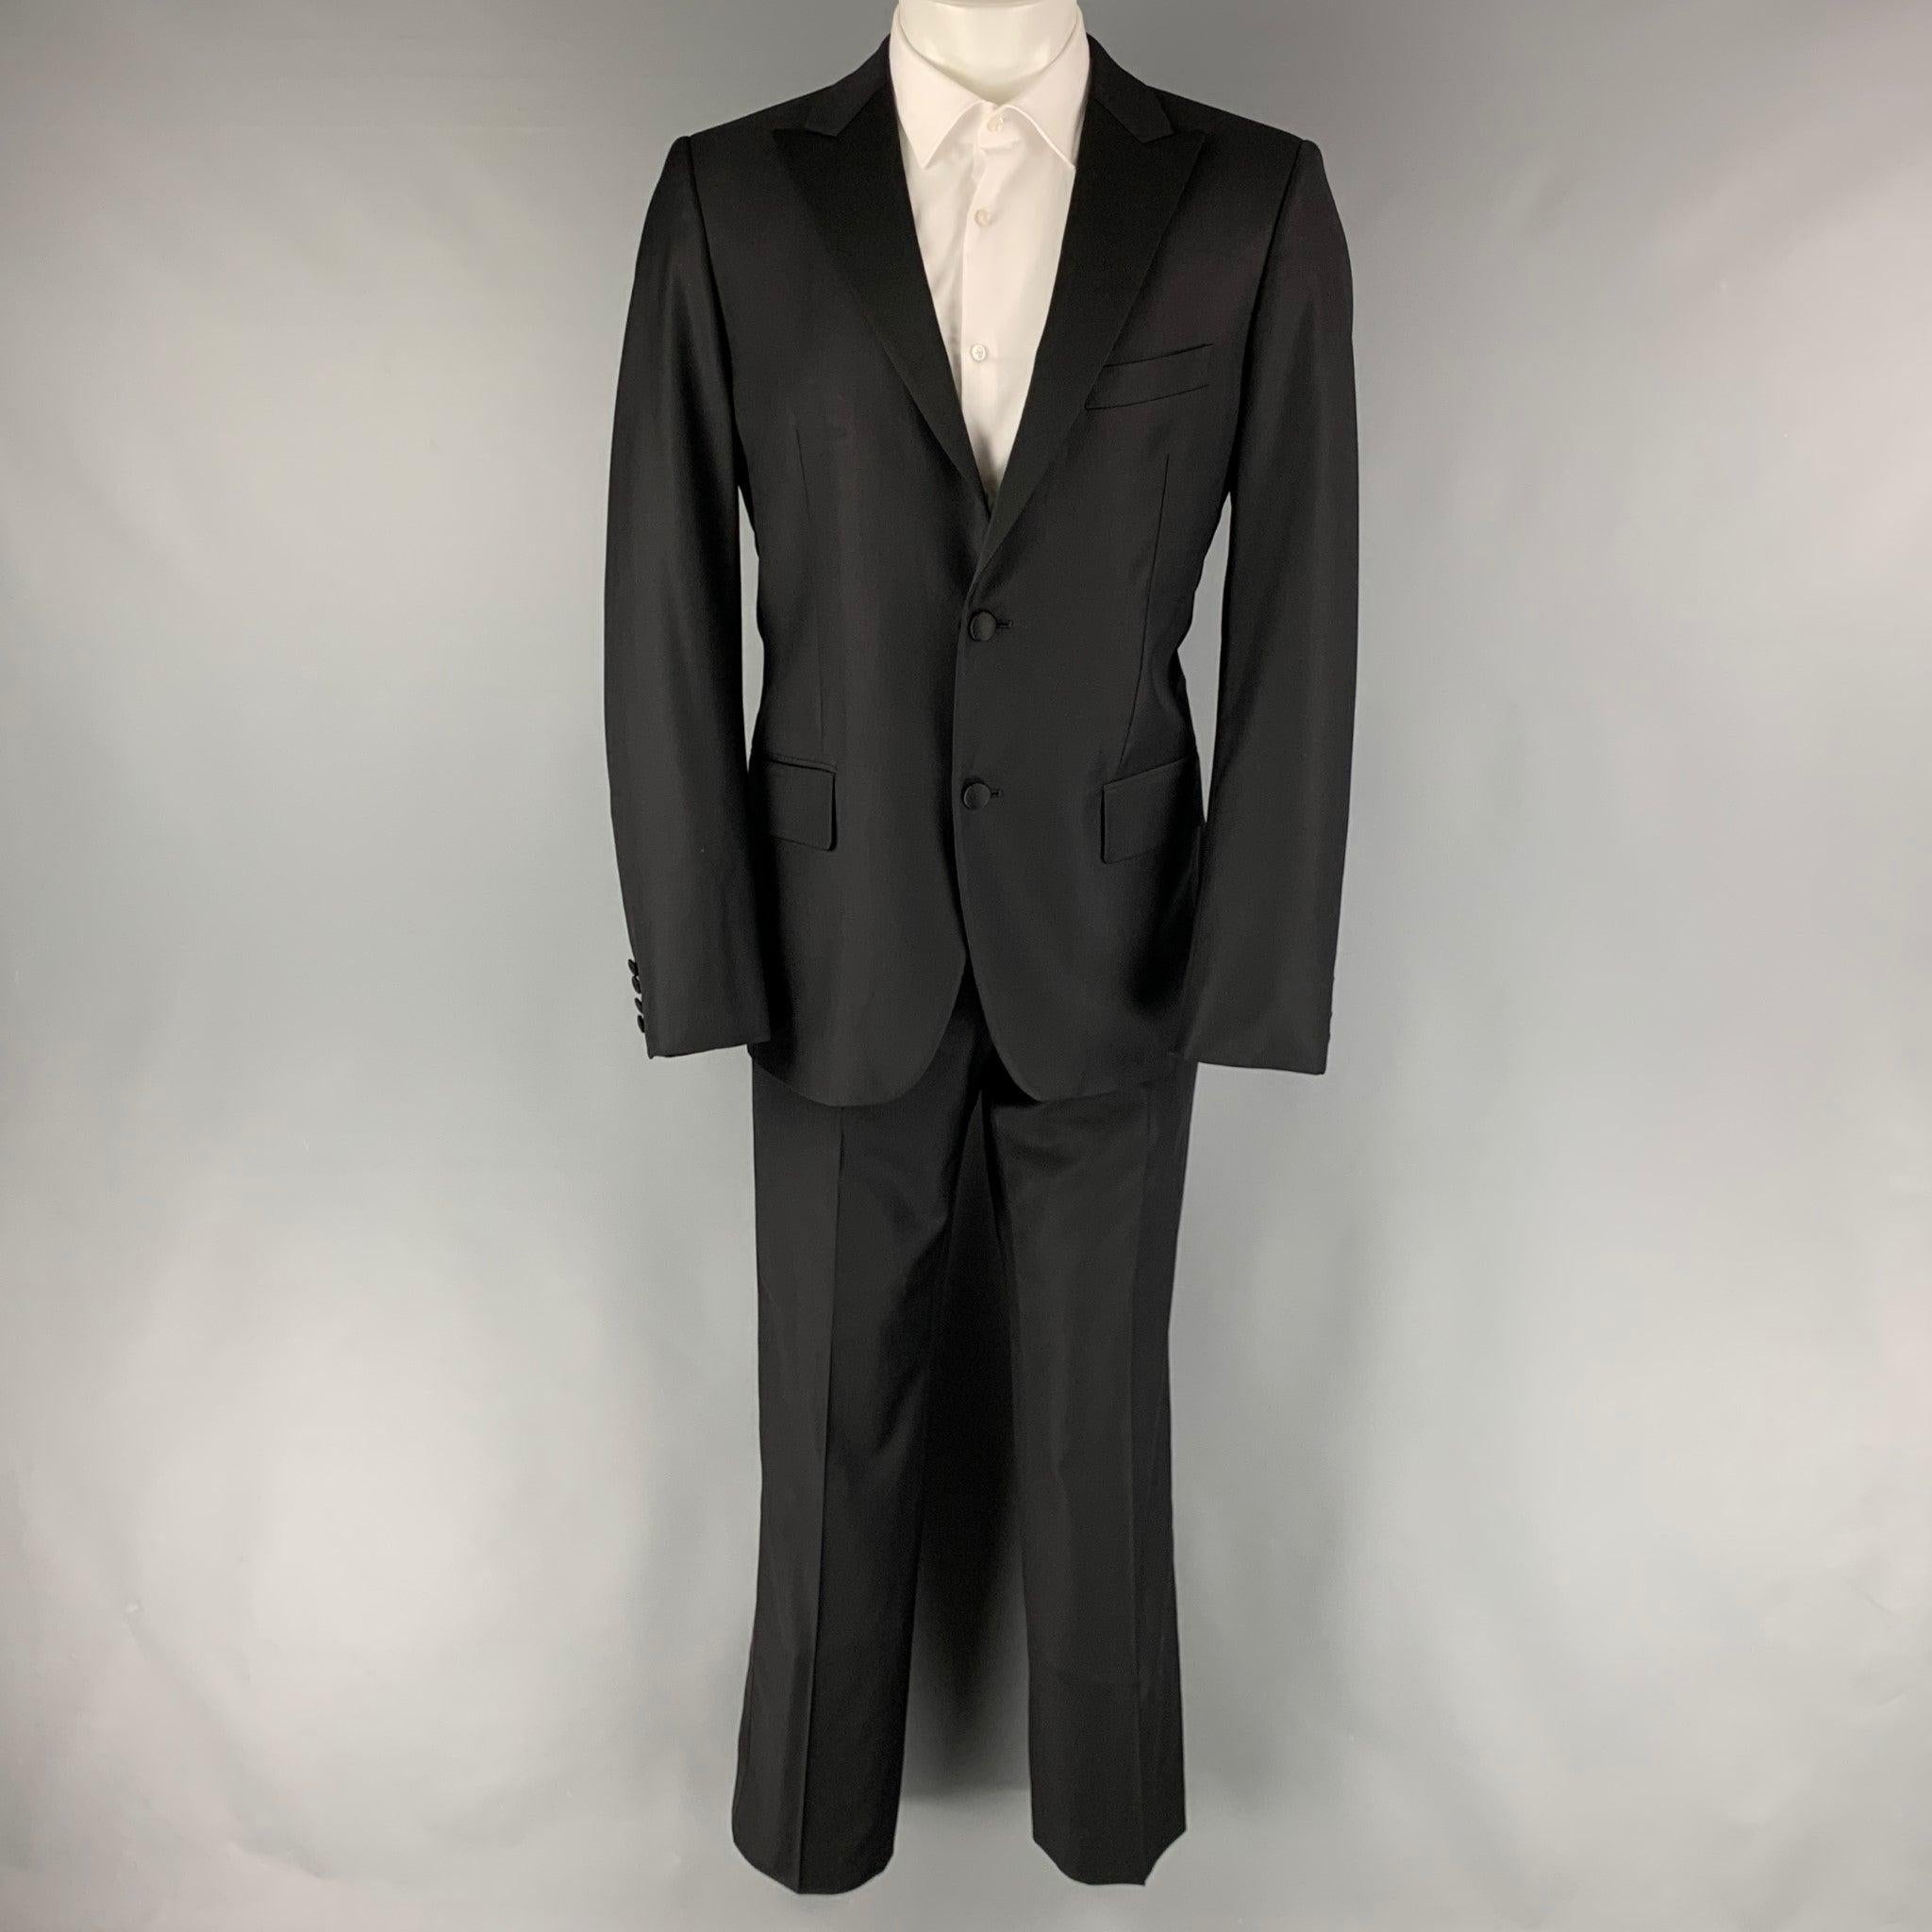 Le smoking CALVIN KLEIN COLLECTION est en laine noire avec une doublure complète et comprend un manteau de sport à un seul boutonnage avec un revers en pointe et un pantalon assorti à devant plat. Excellent état d'origine. 

Marqué :   48 

Mesures